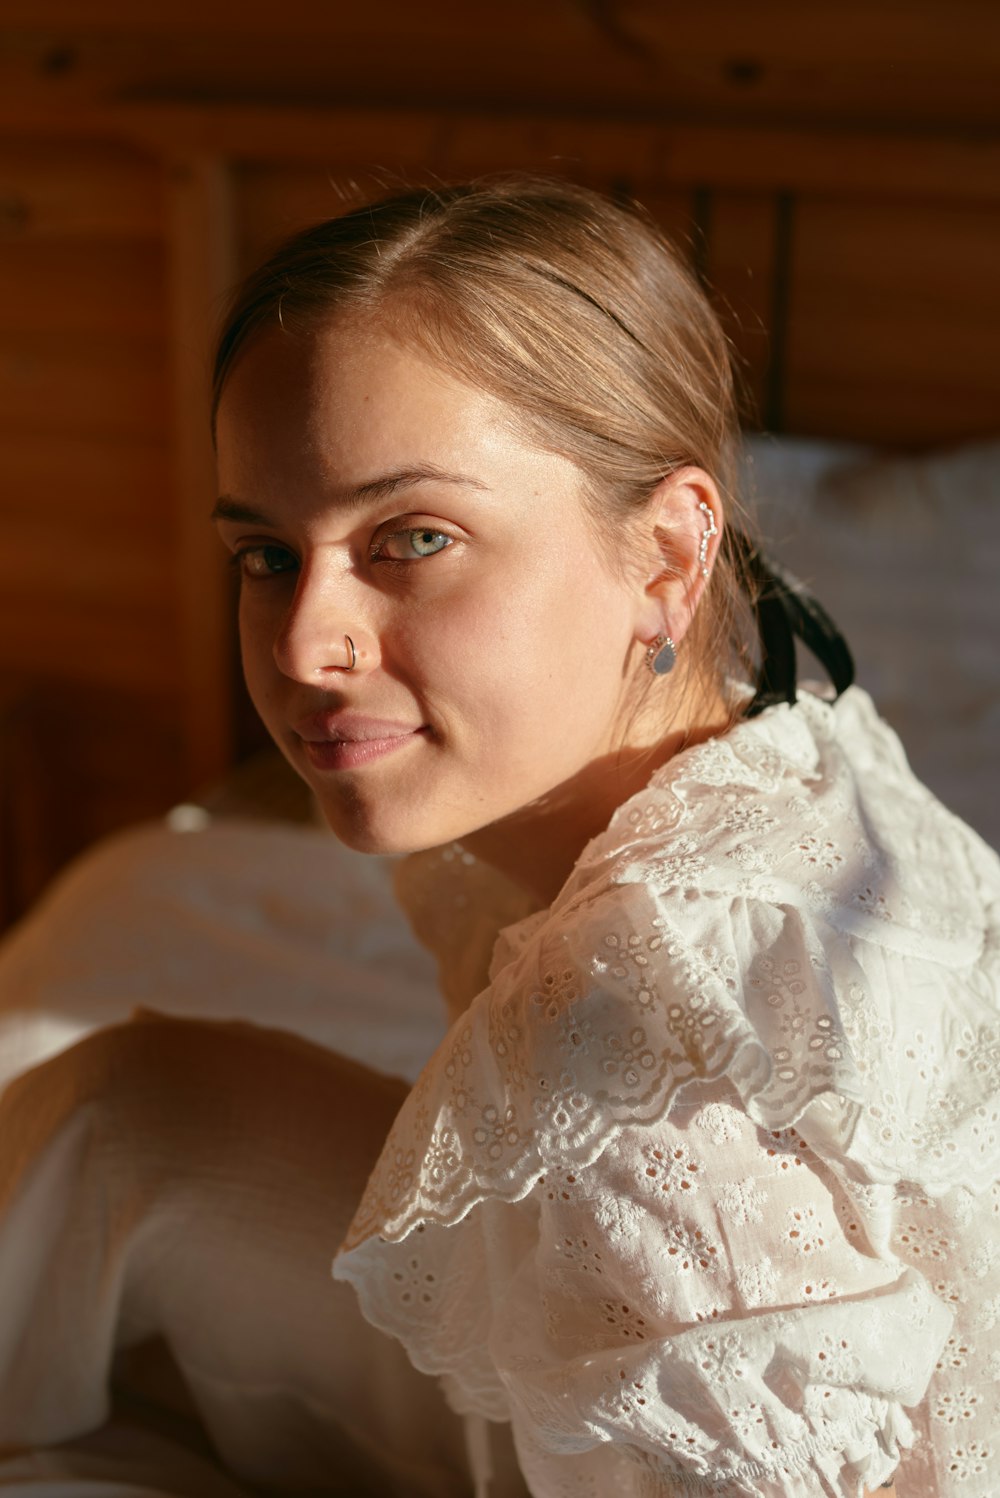 하얀 드레스를 입고 침대에 앉아 있는 여자